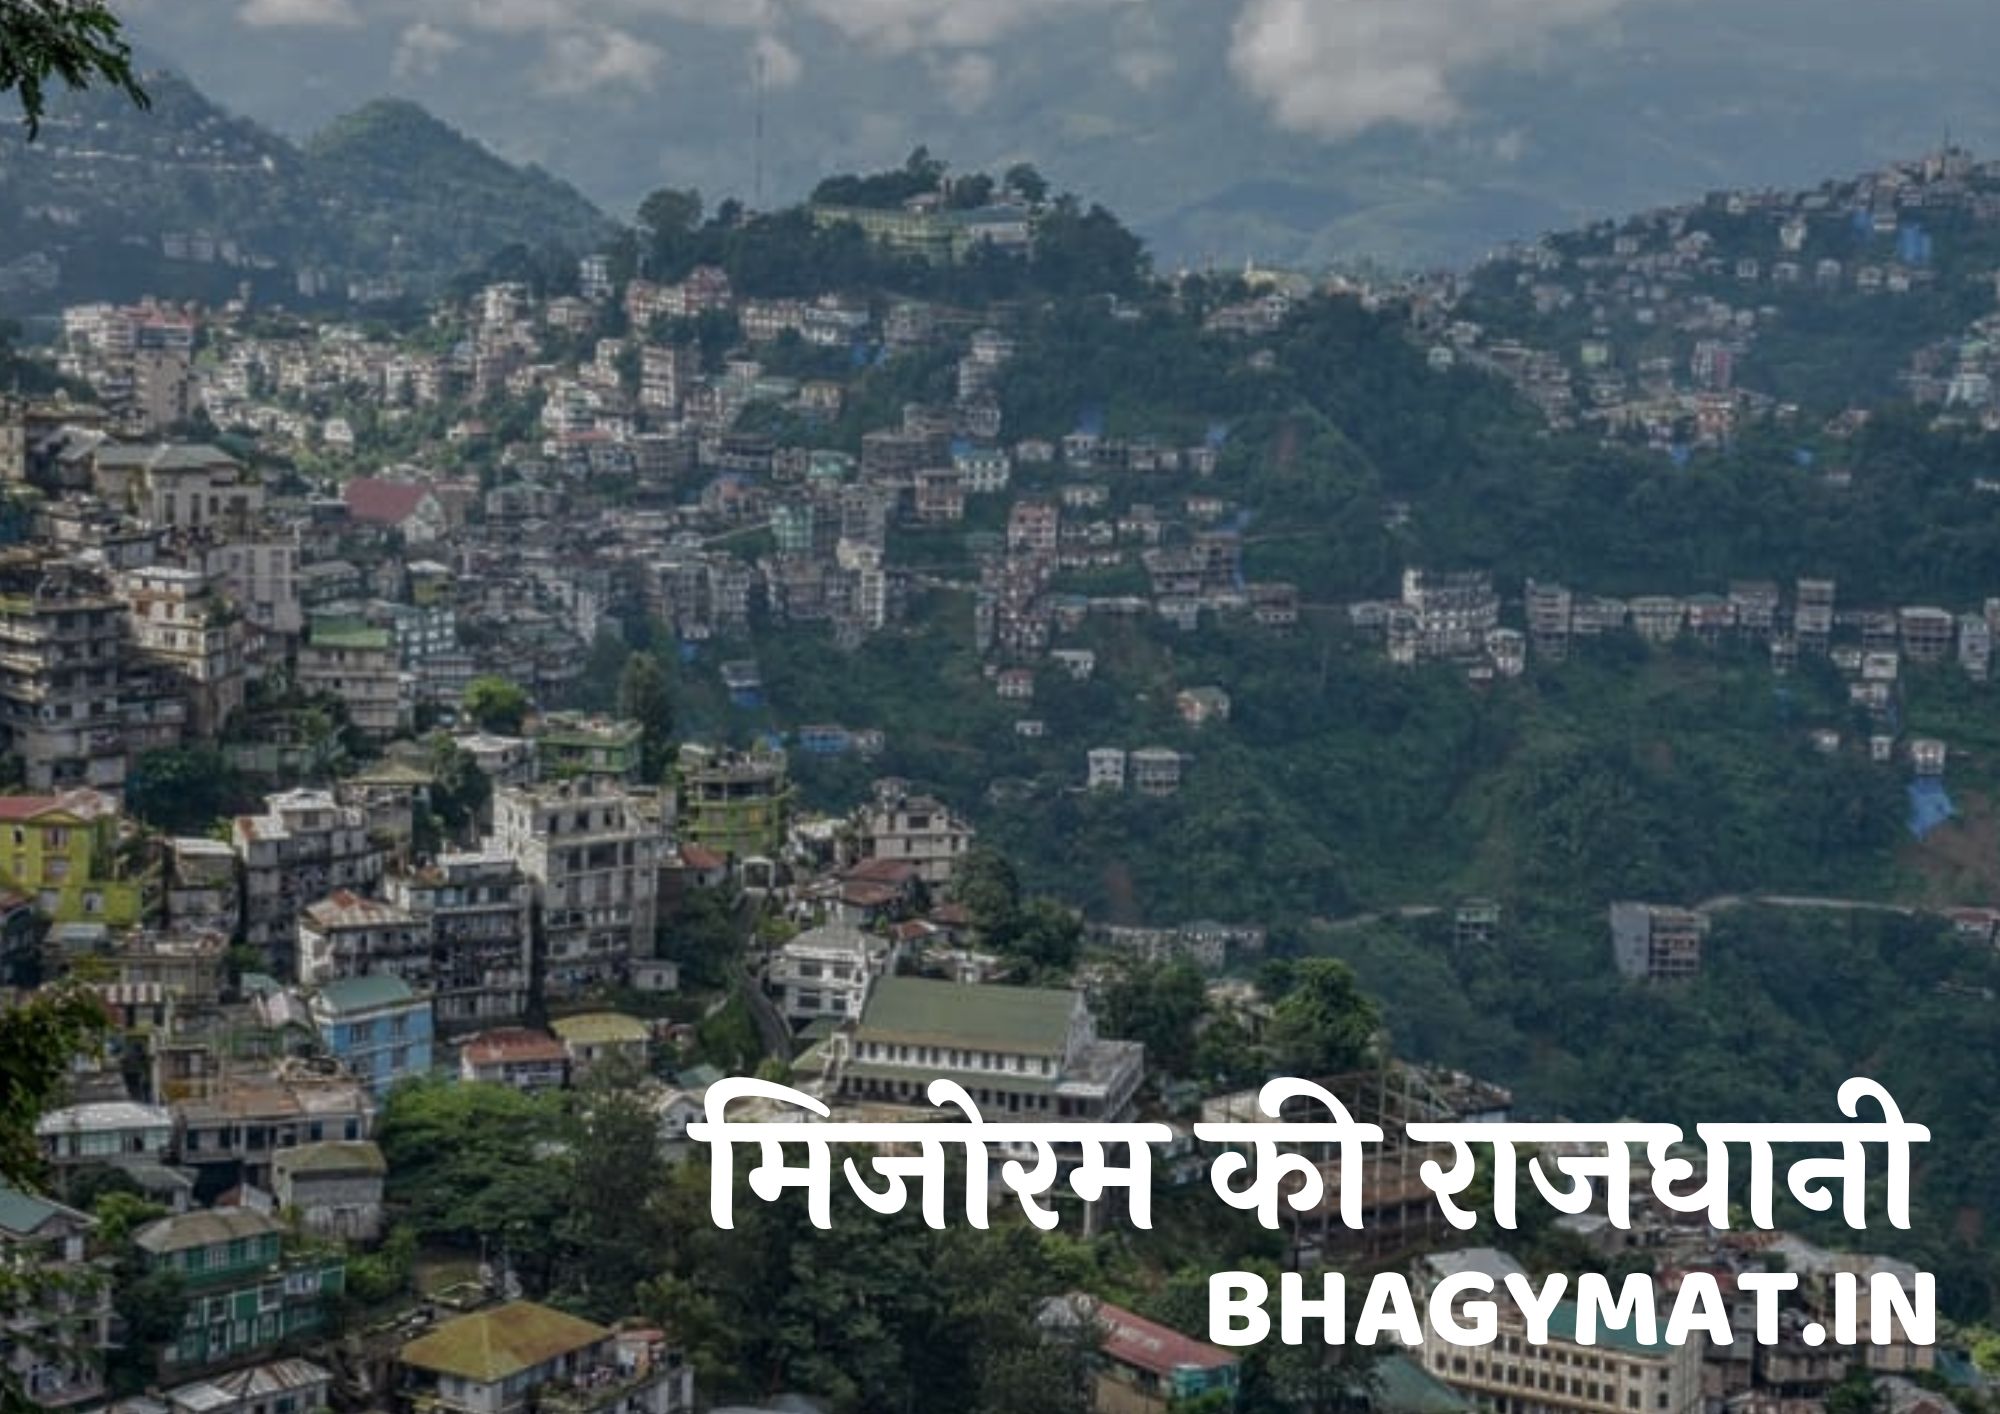 मिजोरम की राजधानी कहां है (मिजोरम की राजधानी क्या है) – Mizoram Ki Rajdhani Kahan Hai - Mizoram Ki Rajdhani Kya Hai